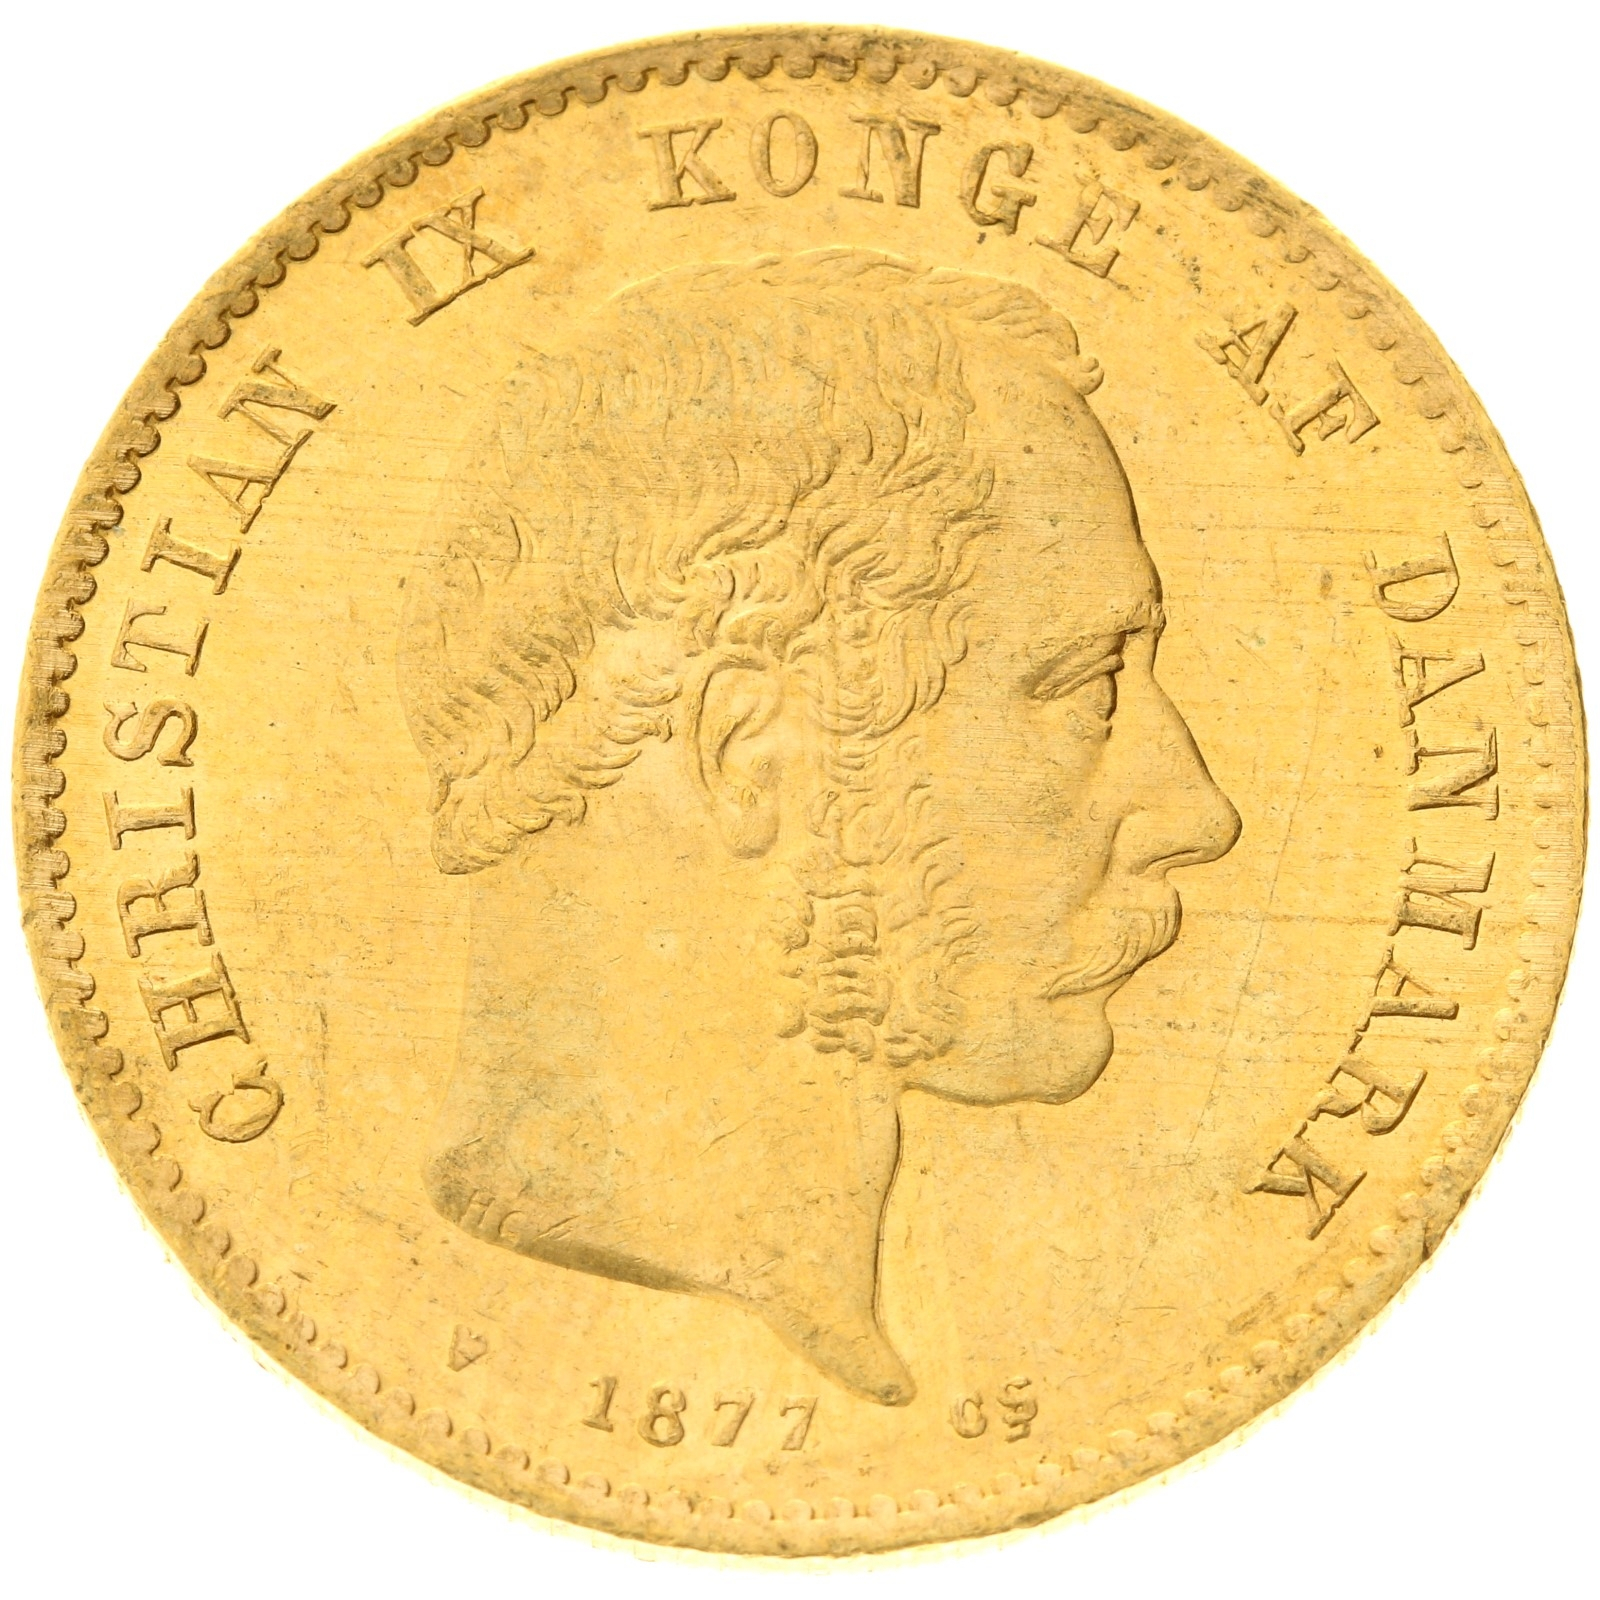 Denmark - 20 kroner - 1877 - Christian IX 